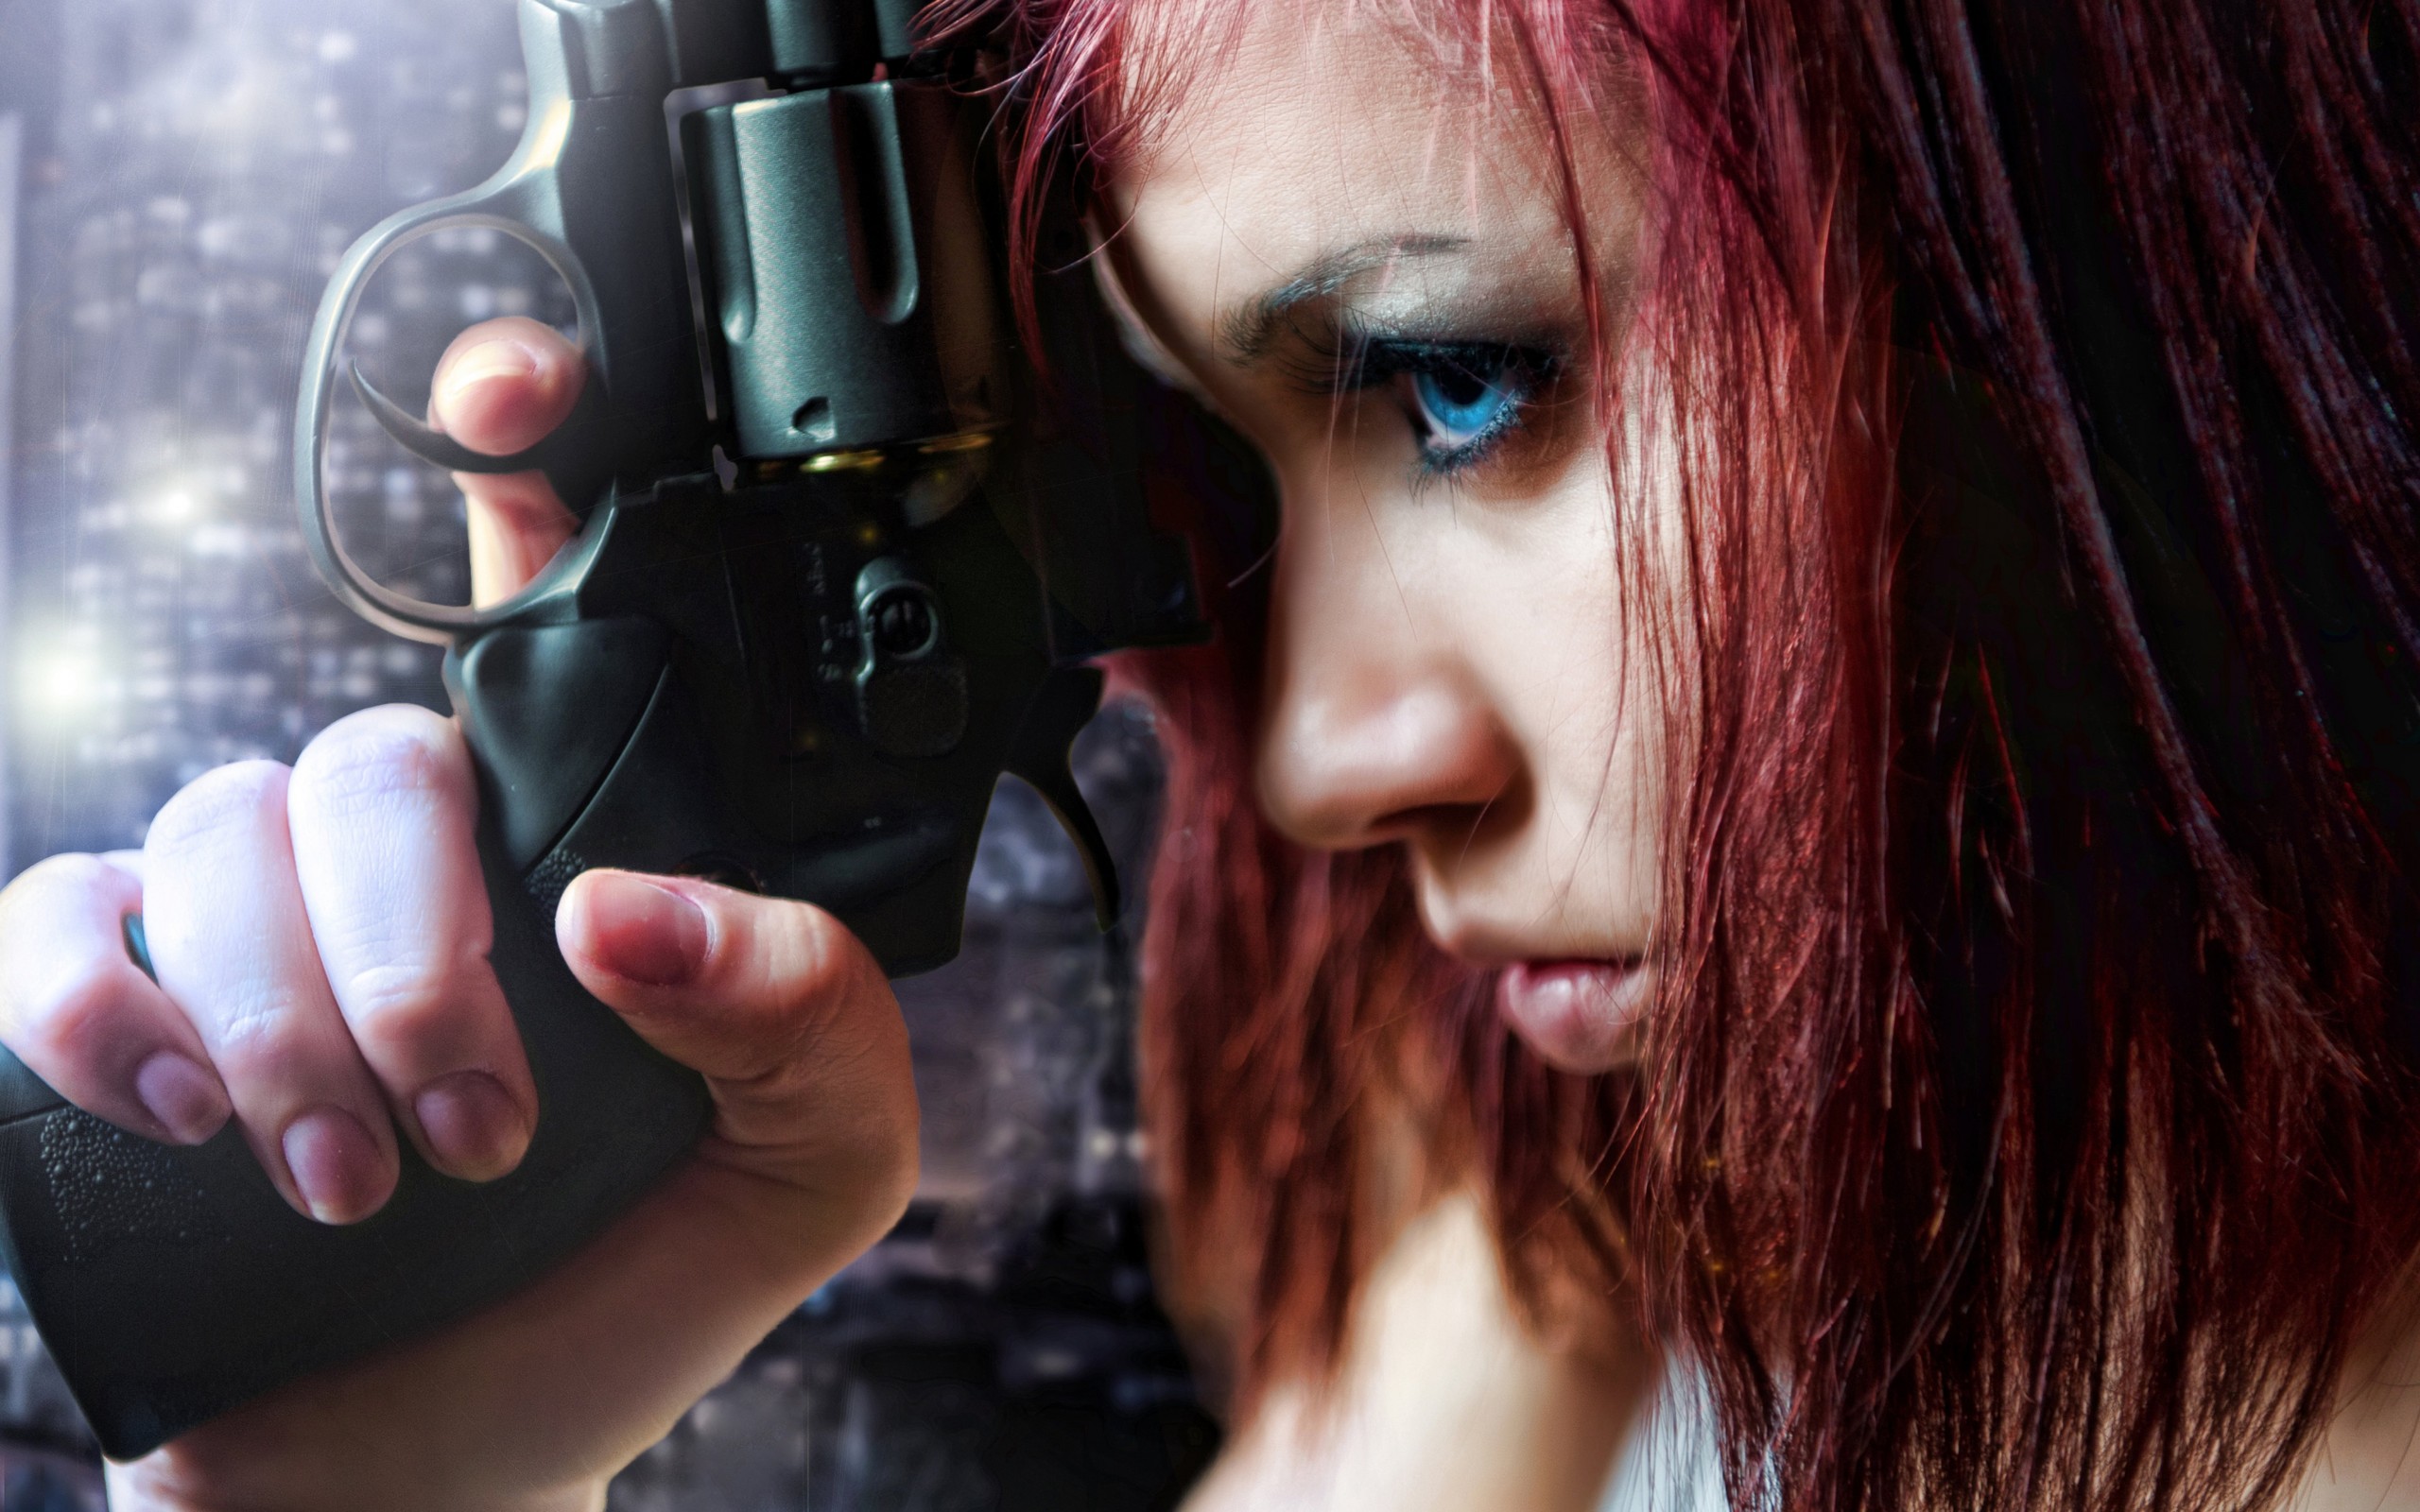 Девочка с пистолетом